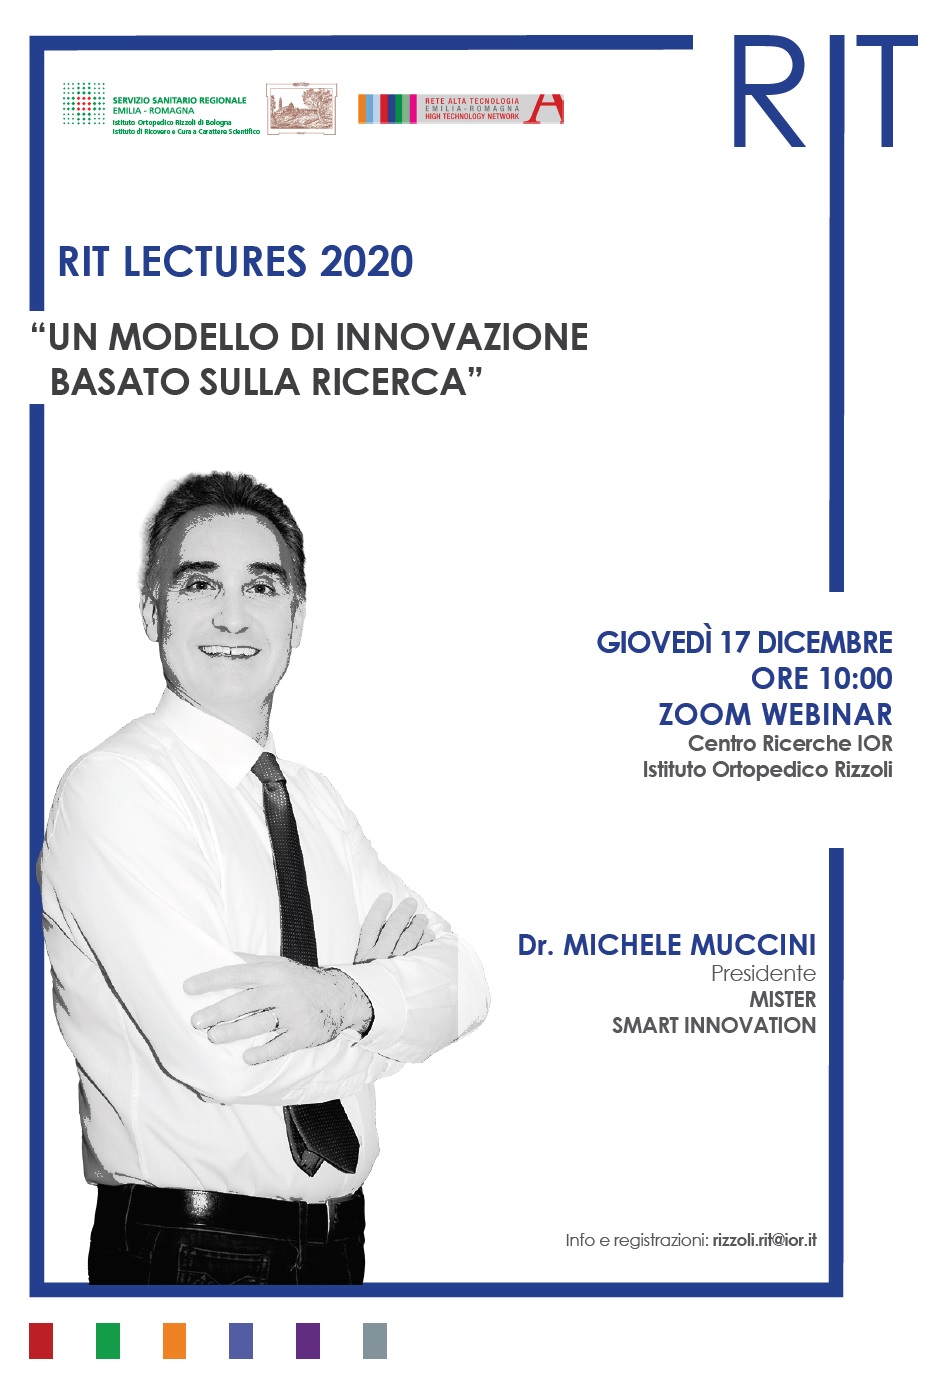 Locandina della lecture del Dr. Michele Muccini